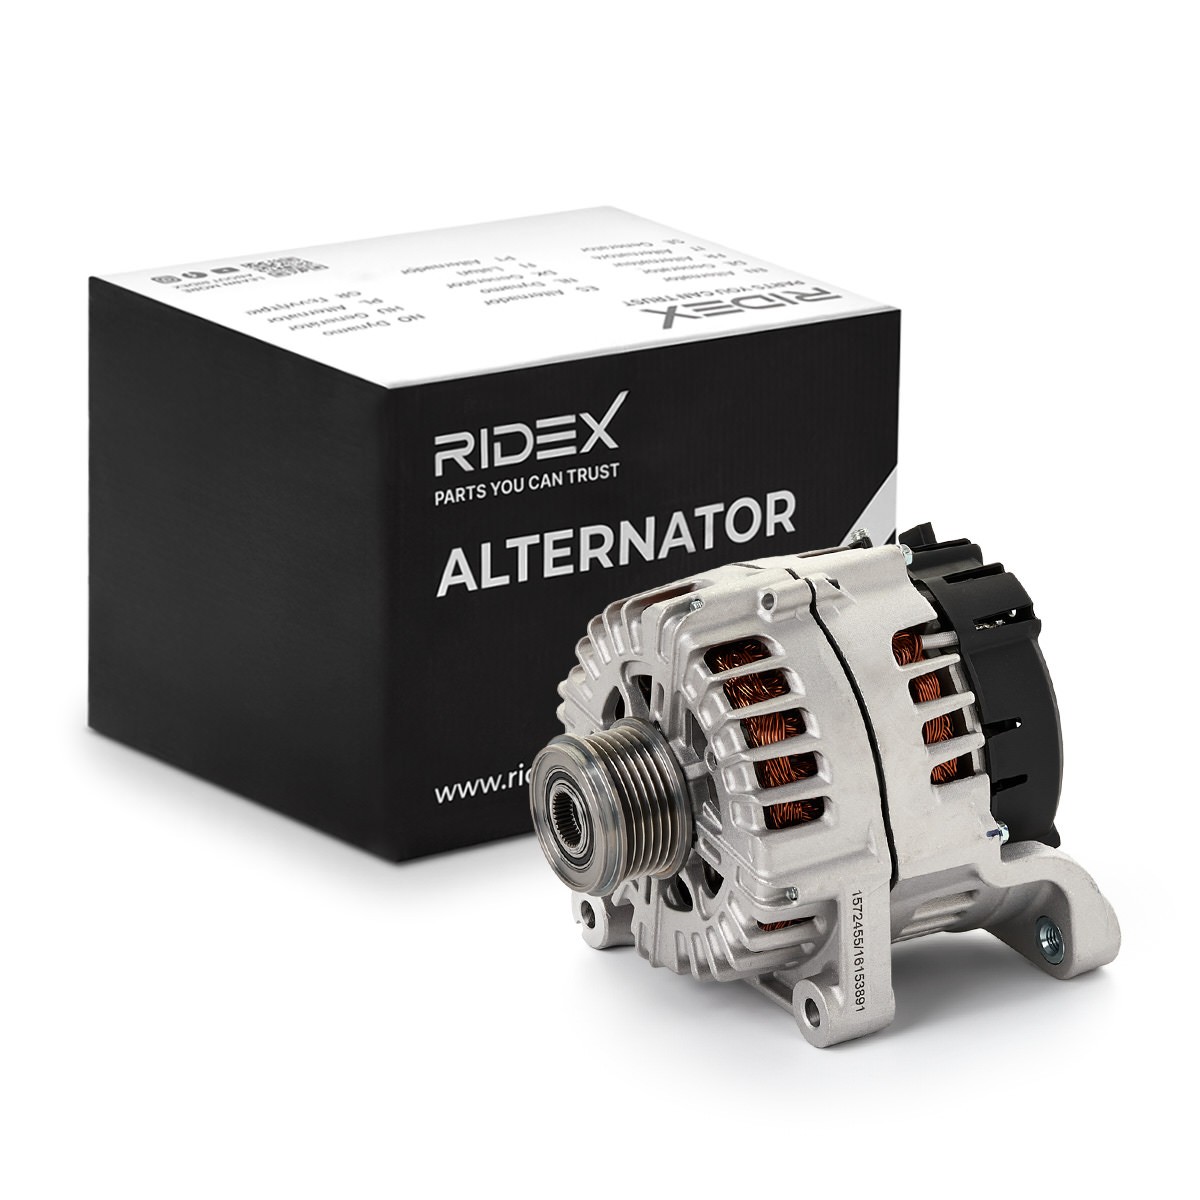 RIDEX Generator BMW 4G1266 7823343,7823344,8519890 Lichtmaschine,Dynamo,Lima,Altenartor 12317823343,12317823344,12318519890,12318578608,12318578609 von RIDEX